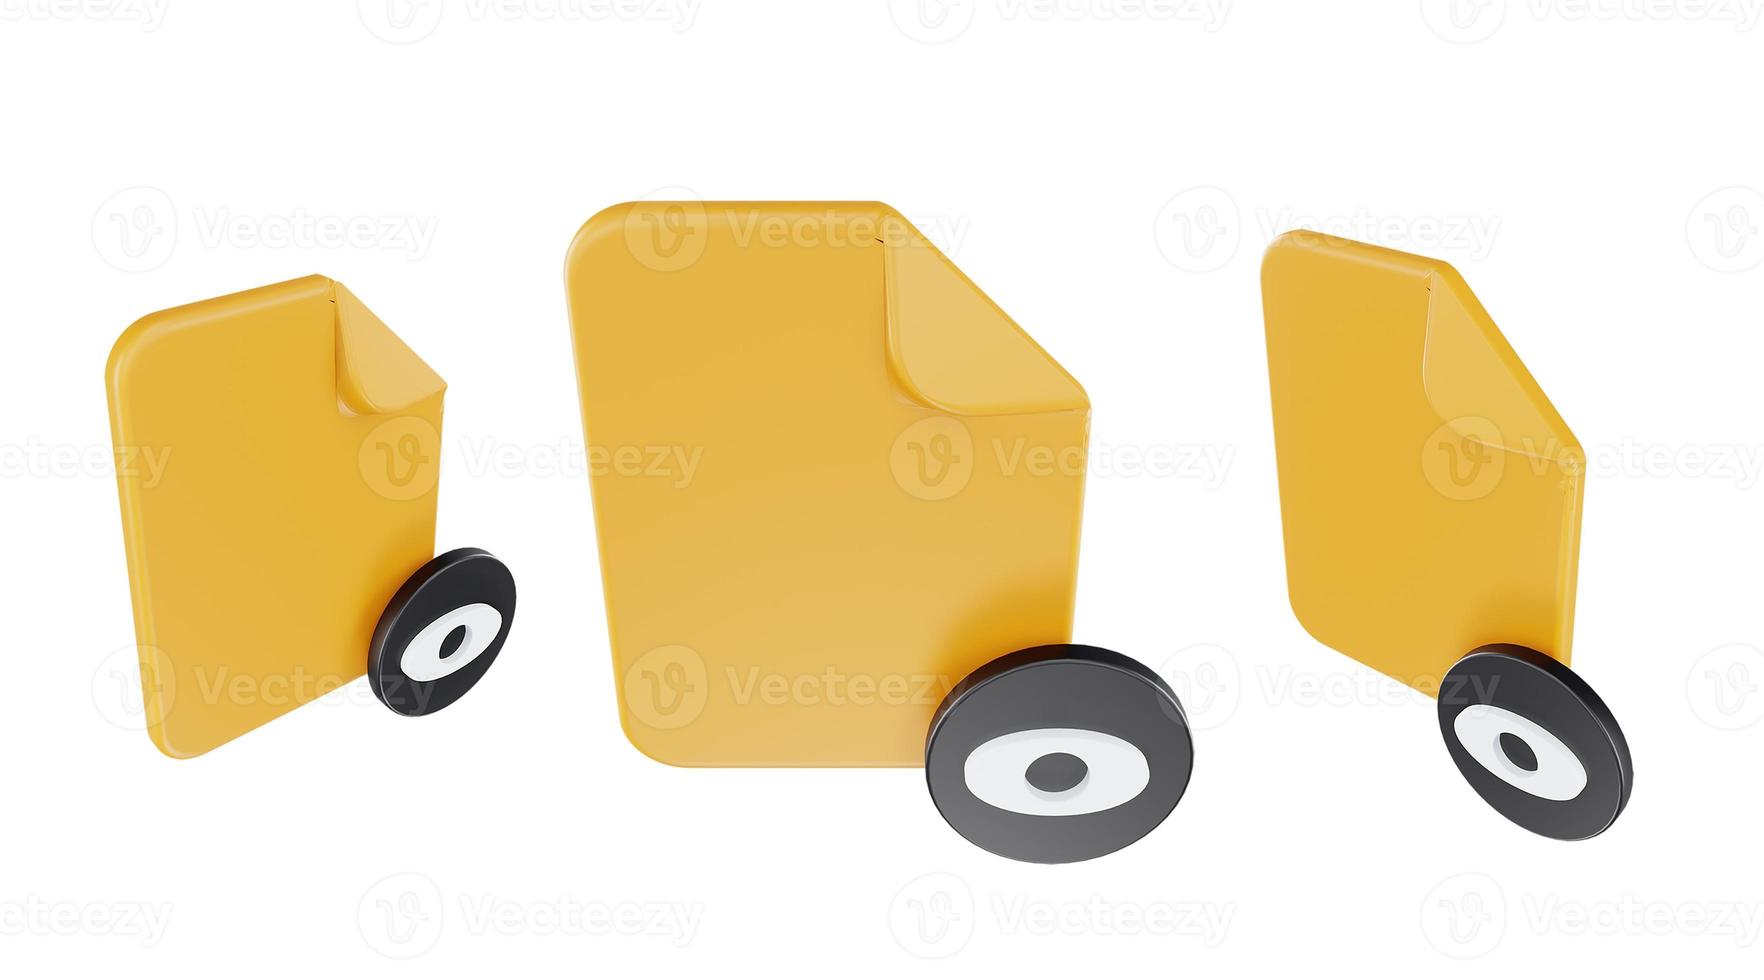 Fichier de rendu 3d vu icône avec papier de fichier orange et noir vu photo